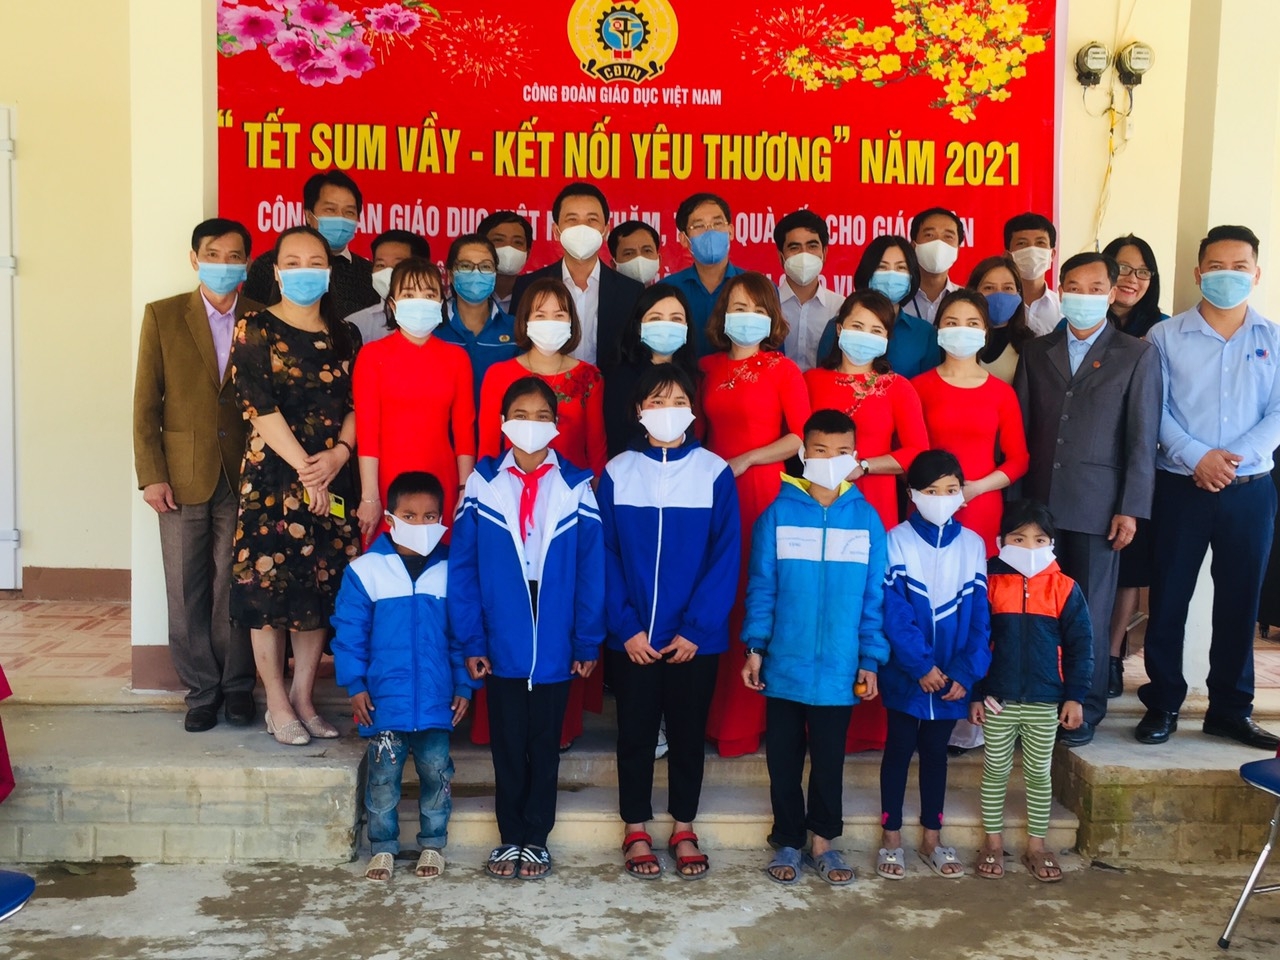 “Tết Sum vầy – Kết nối yêu thương” đến với giáo viên và học sinh vùng biên giới tỉnh Quảng Trị